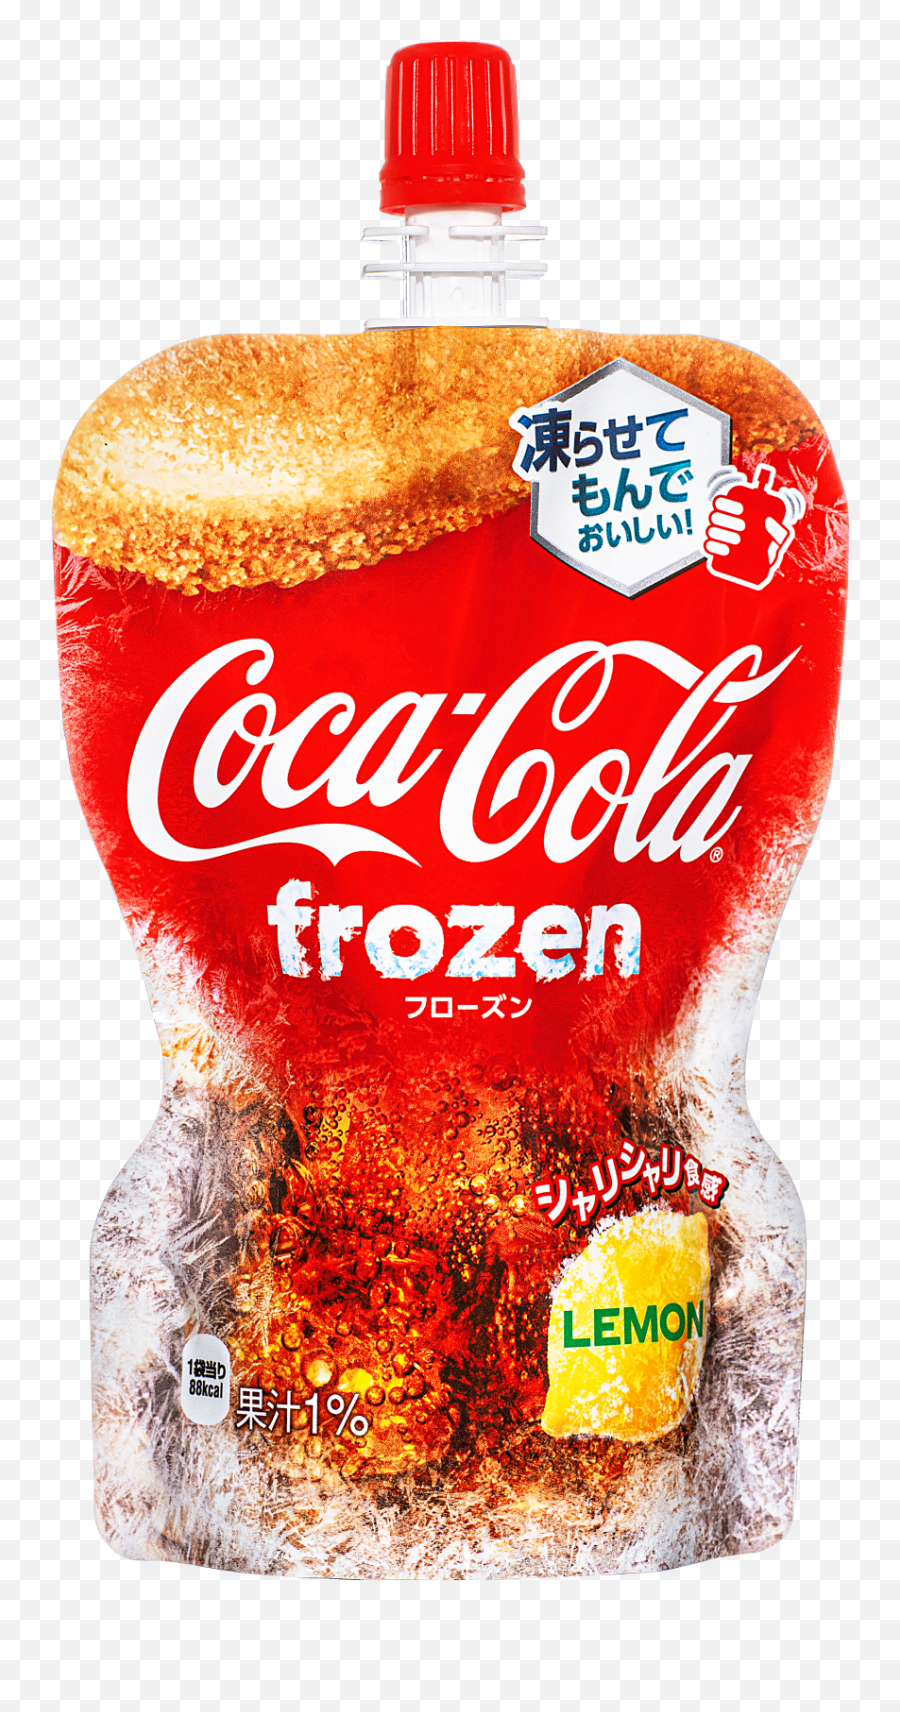 Coca - Cola Frozen Lemon Coca Cola Frozen Lemon Emoji,Coke A Cola Emoticon Facebook